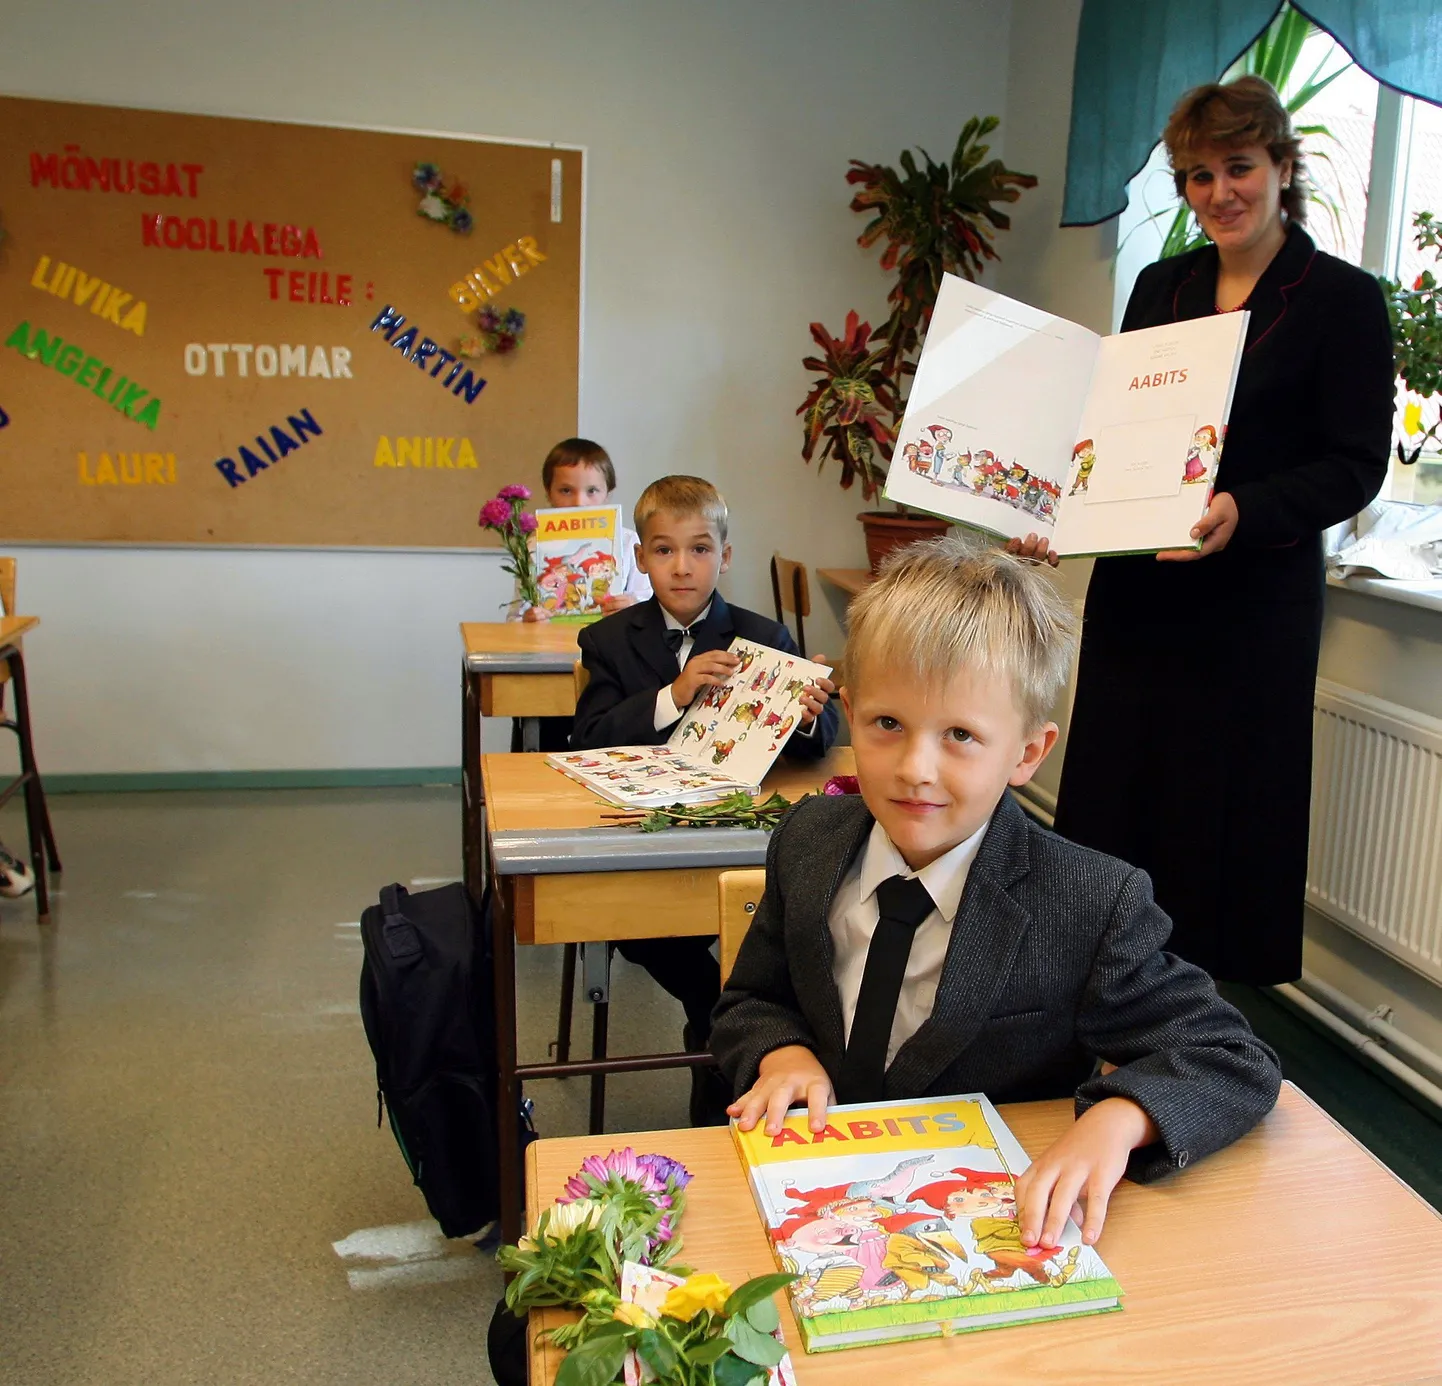 Esimene koolipäev möödunud aastal Viljandimaal Halliste koolis.